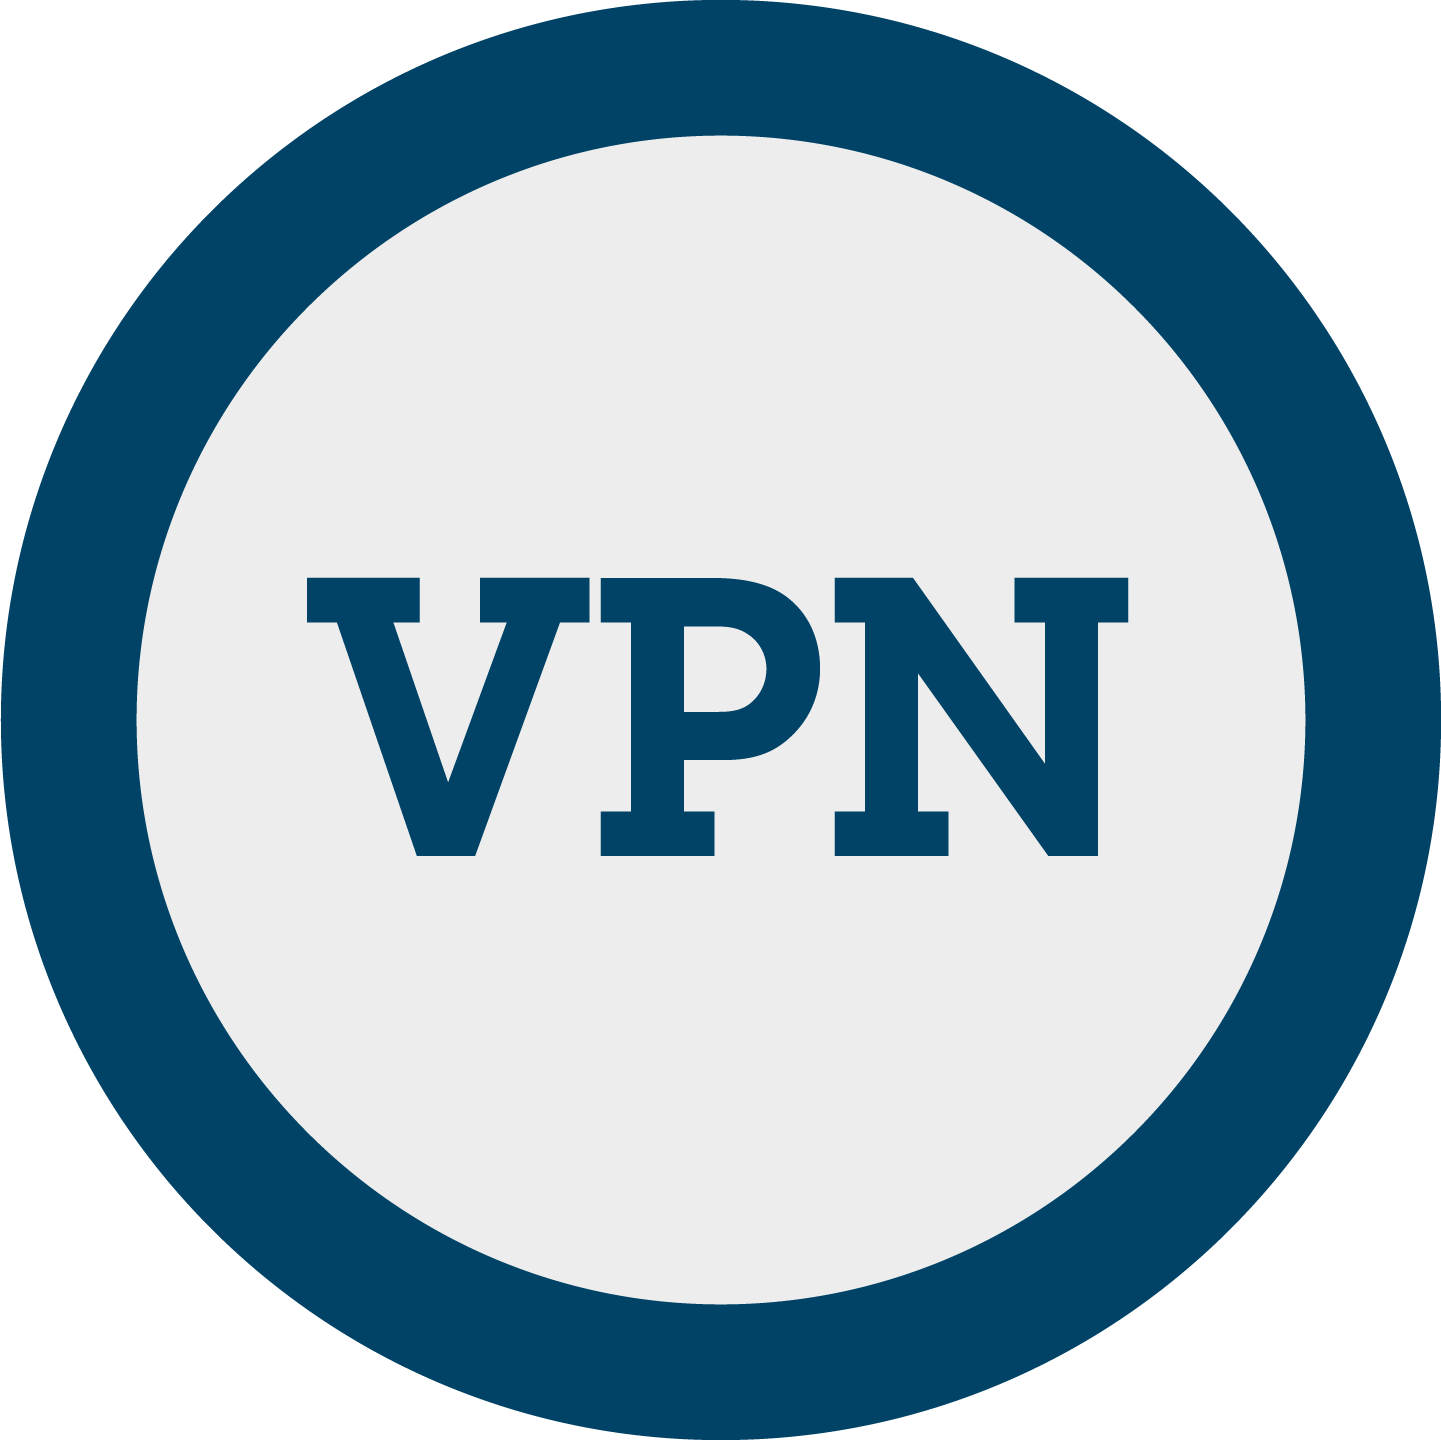 Le VPN 1.1.10 Crack